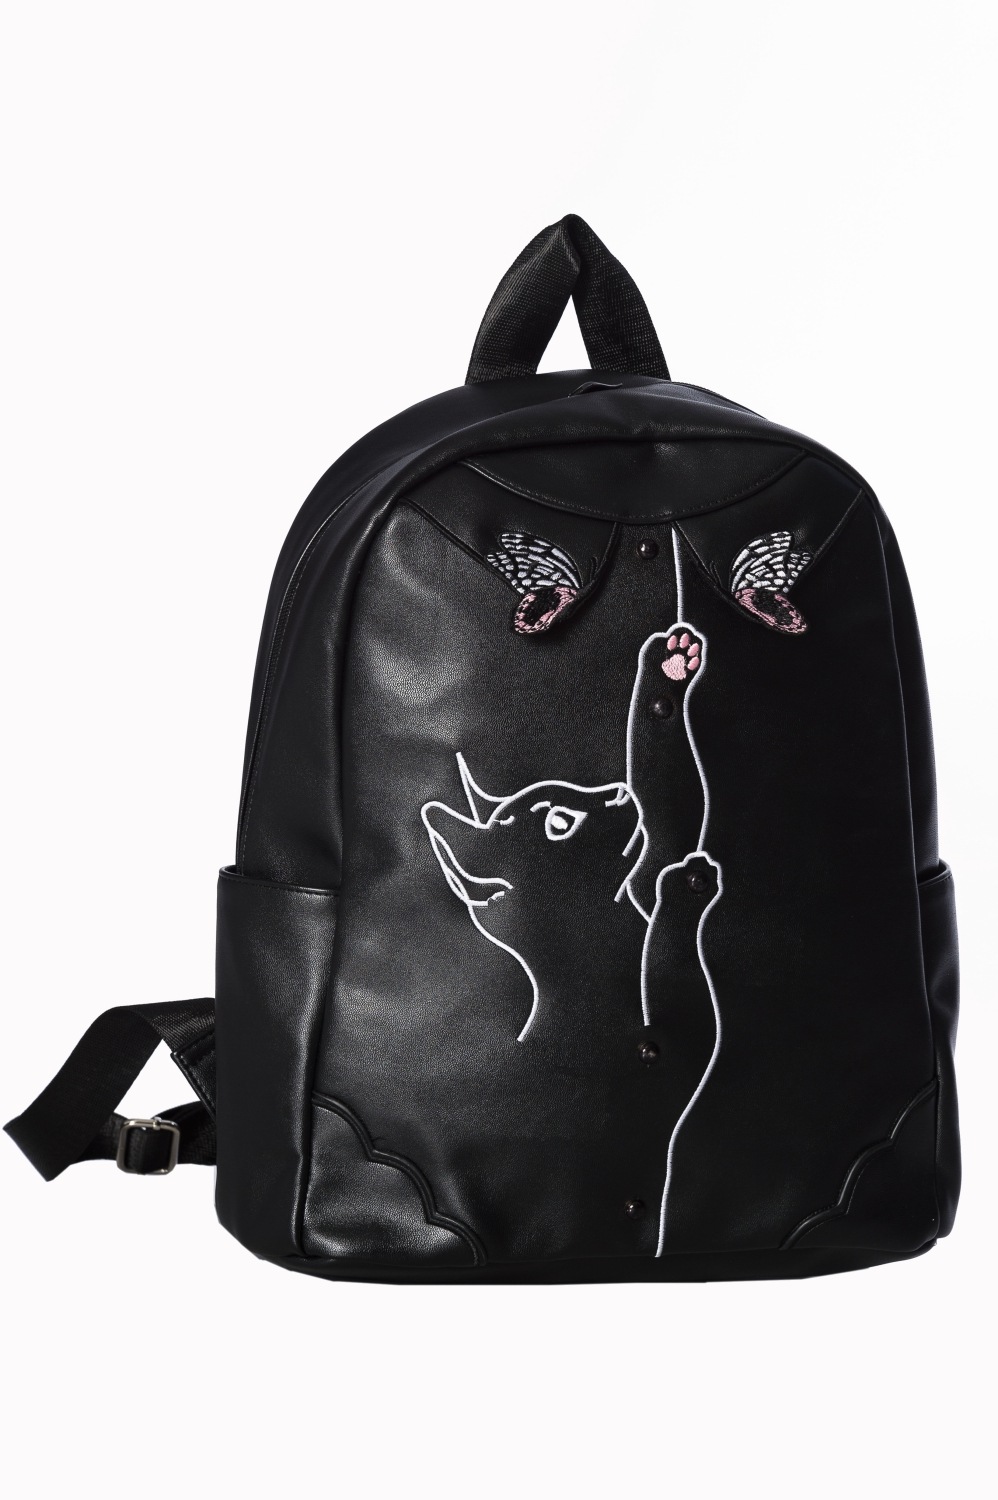 Meow Backpack BG7237